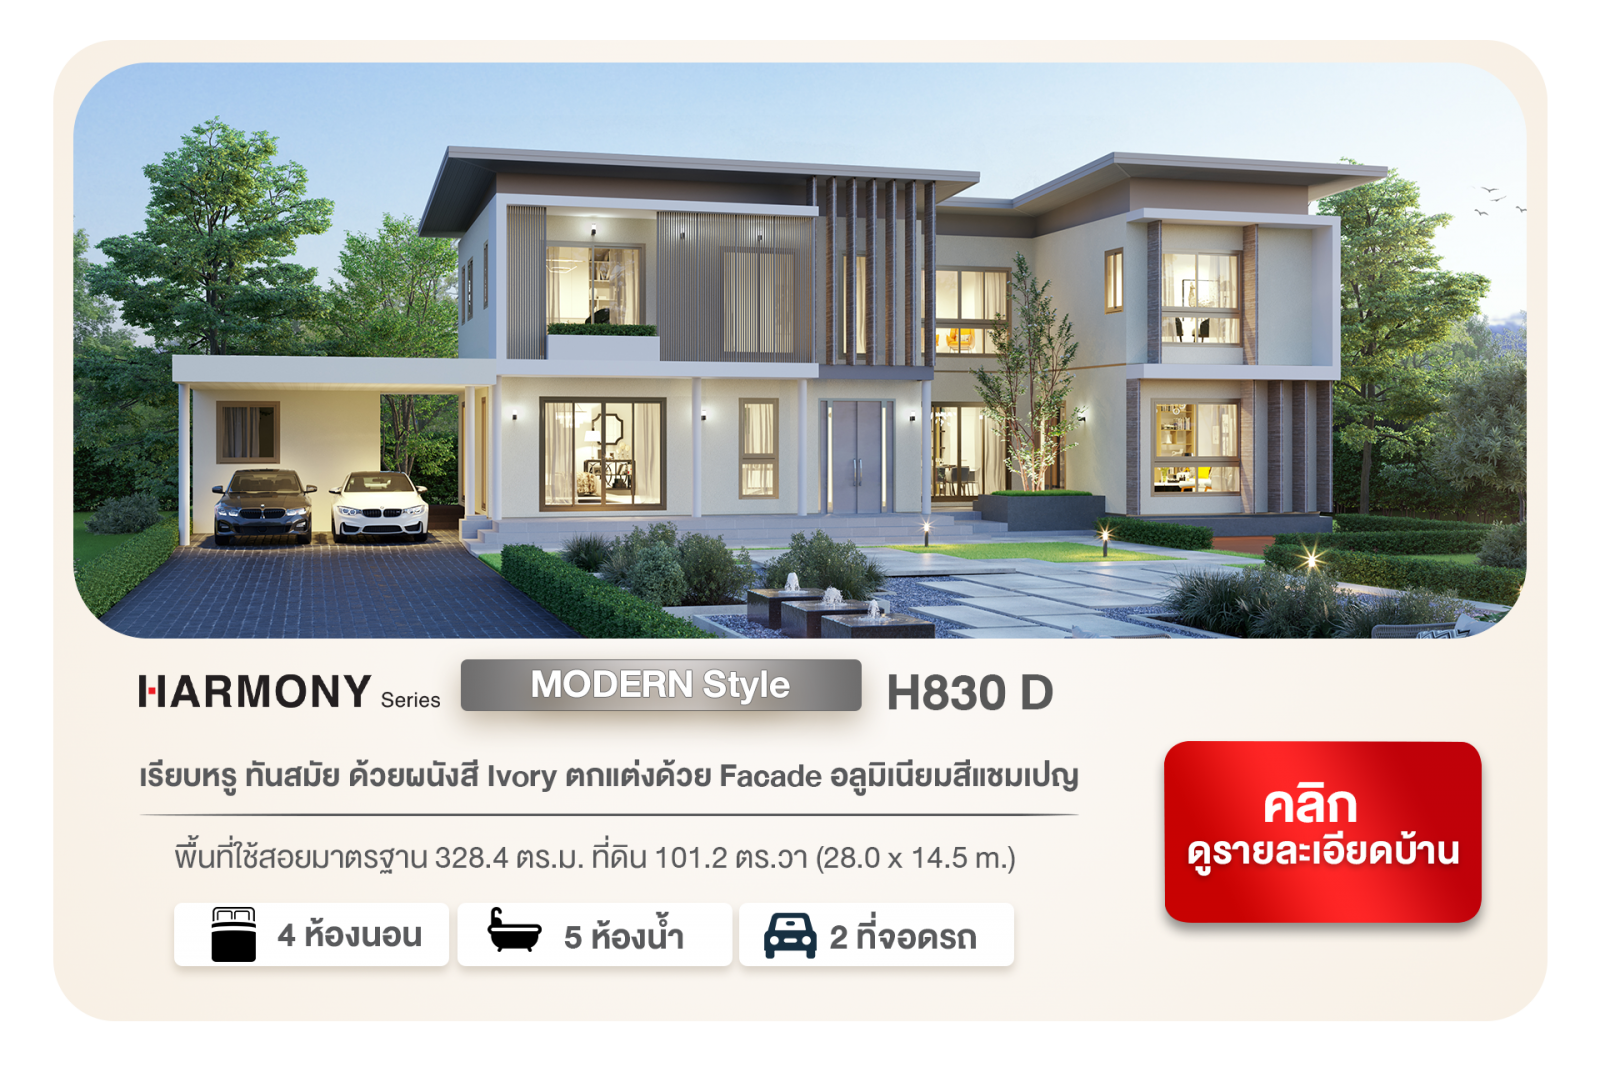 พบกับ 4 แบบบ้านใหม่ 2 Style HARMONY SERIES Modern H840 C